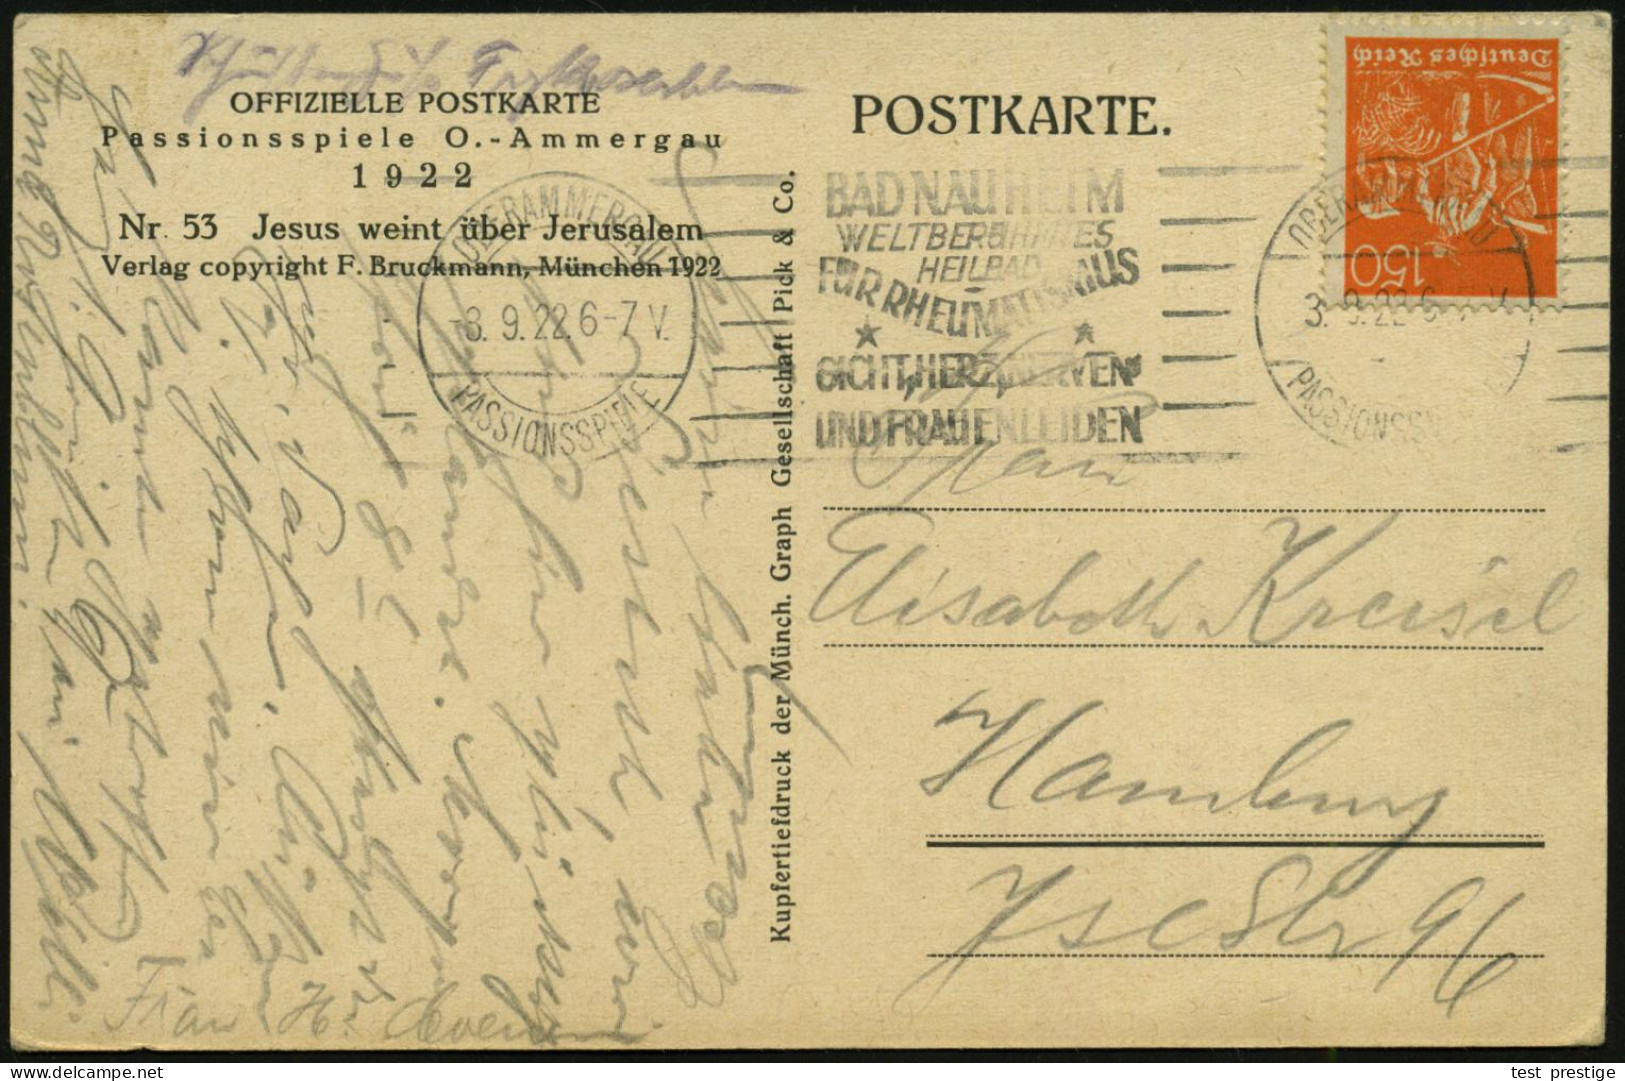 OBERAMMERGAU/ PASSIONSSPIELE/ BAD NAUHEIM/ ..HEILBAD/ FÜR RHEUMATISMUS/ GICHT.. 1922 (8.9.) Seltener Band-MWSt (Sonderfo - Enfermedades